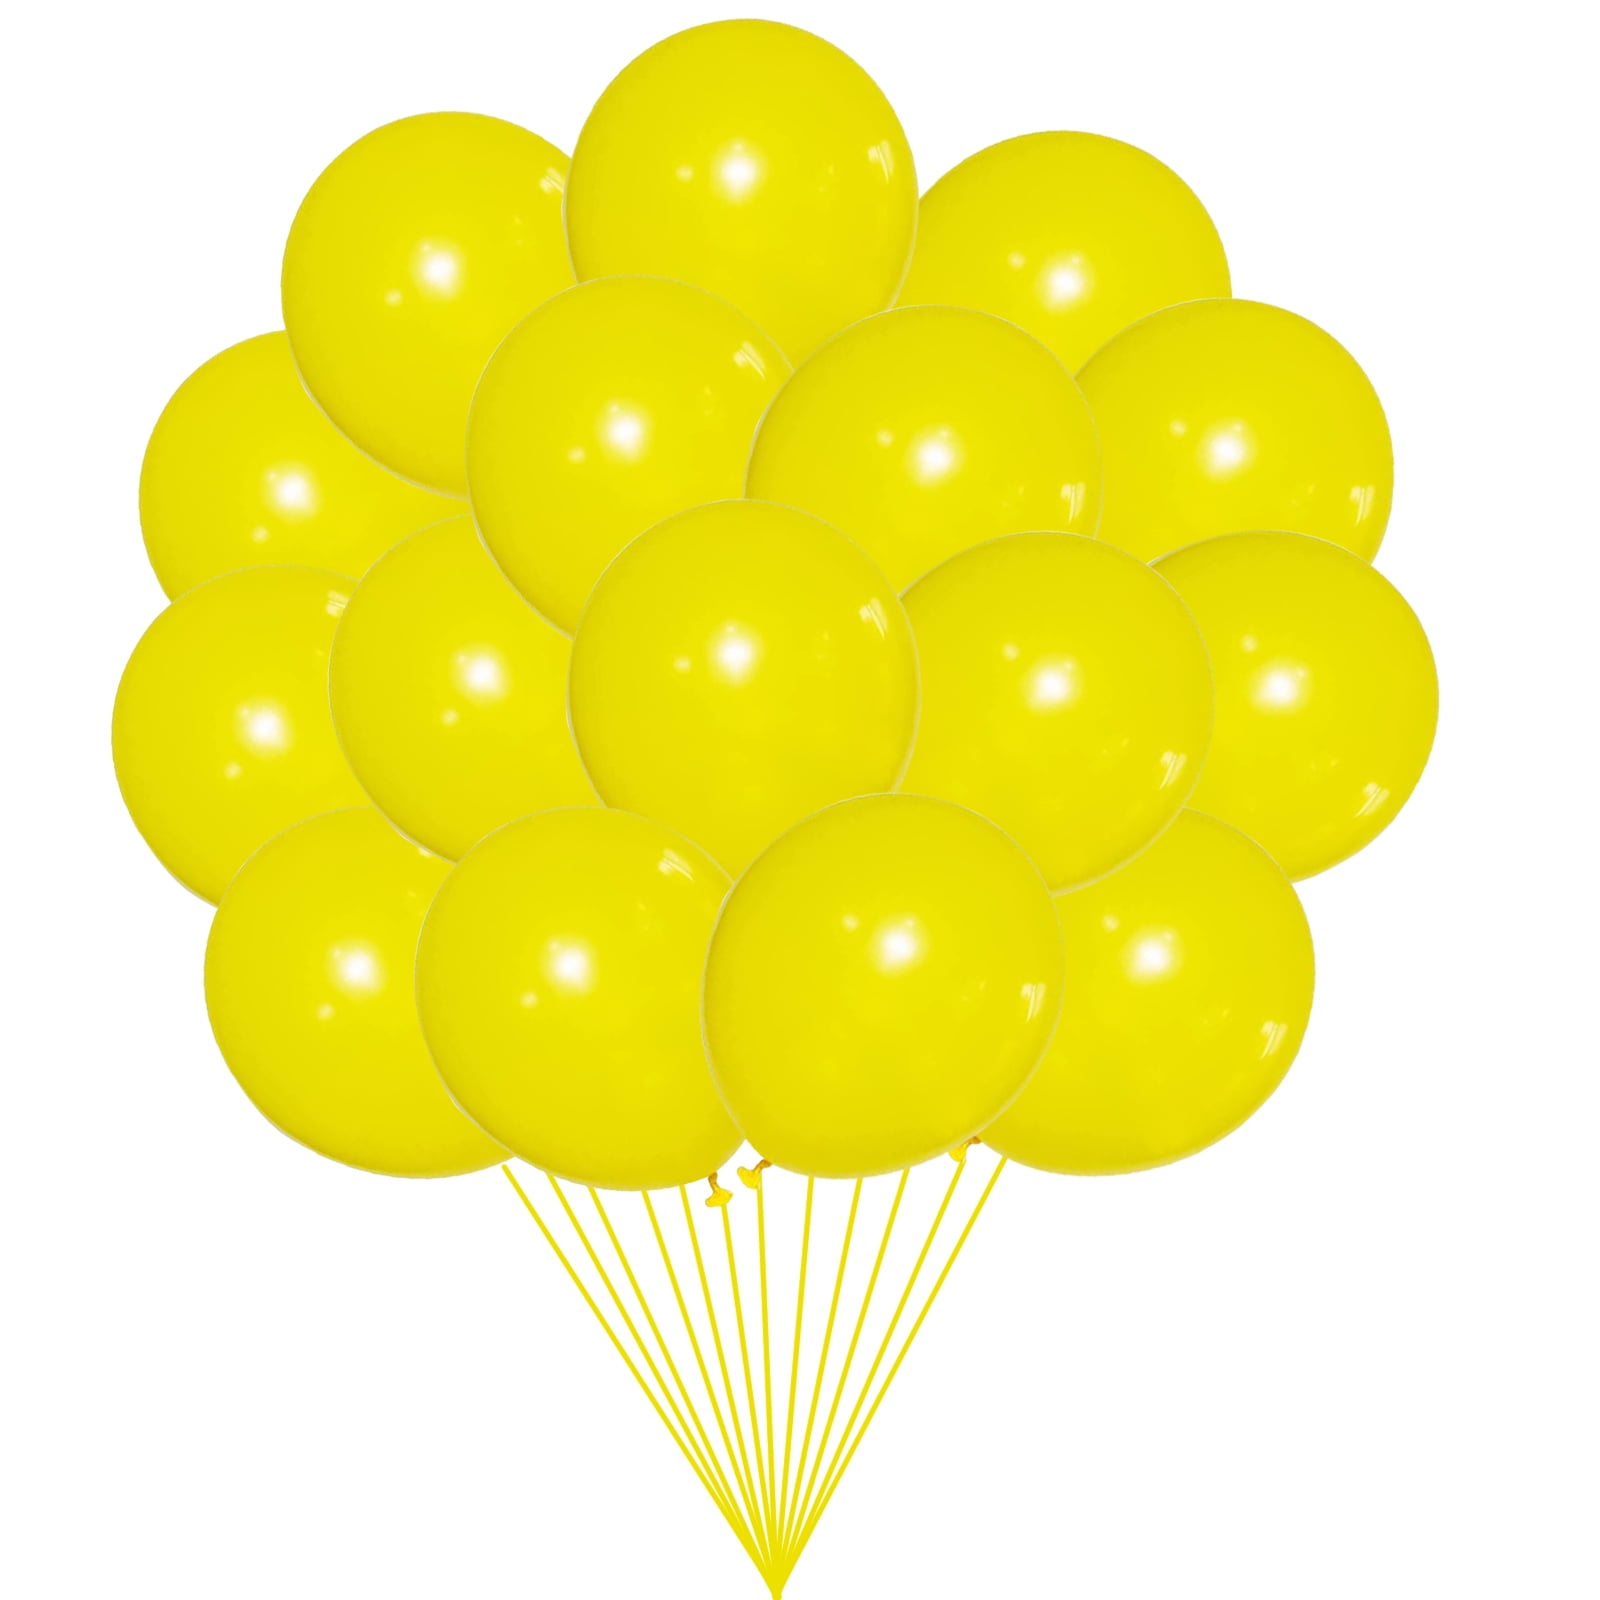 Balloon Ribbon  Car Lot Balloons - Auto Dealer Supplies